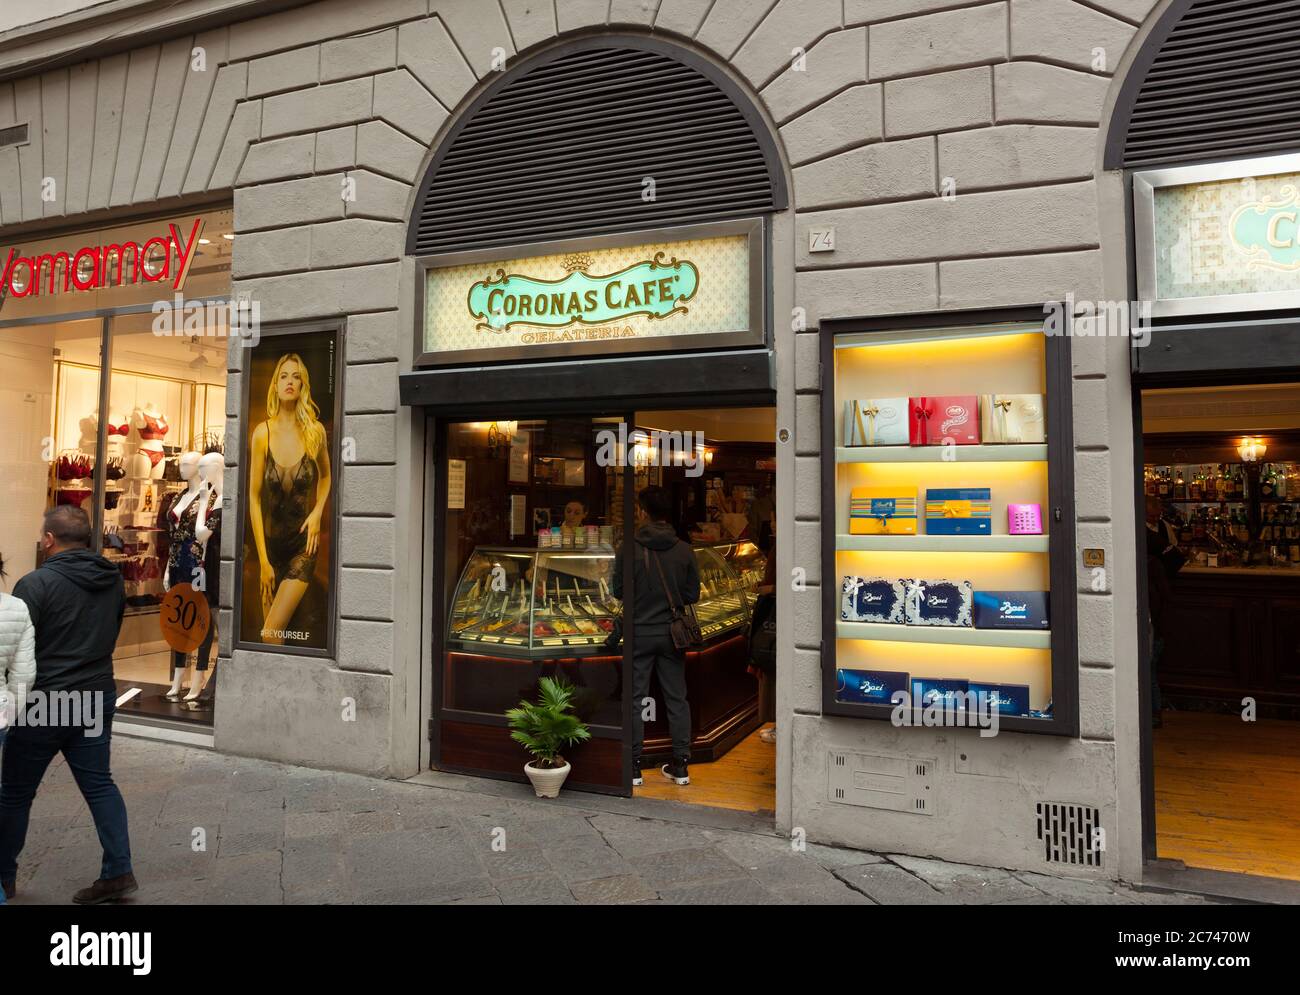 Florence, Italie - 04 novembre 2017 : Coronas Cafè, la célèbre pâtisserie, bar et boutique de glaces de Florence, situé dans la via dei Calzaiuoli. Banque D'Images